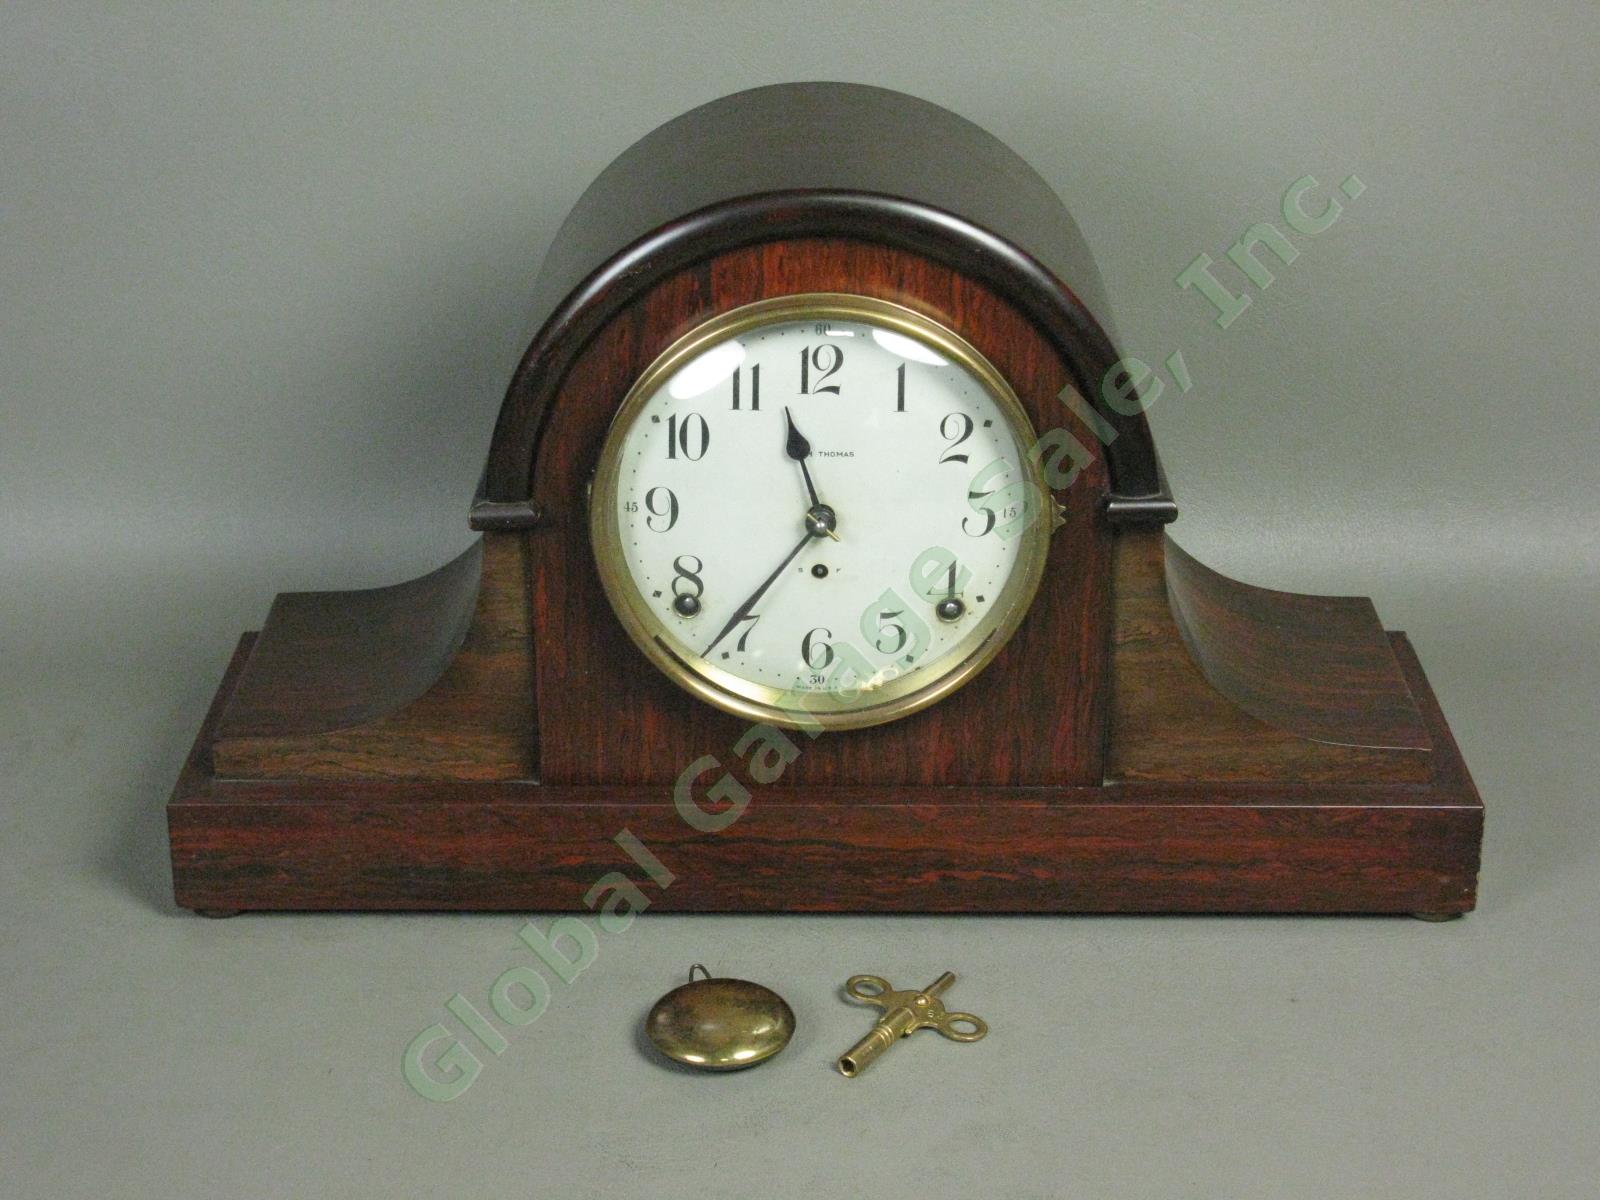 Vtg Antique Seth Thomas Tambour Mantle Clock No 89 Movement w/Key Runs + Chimes!